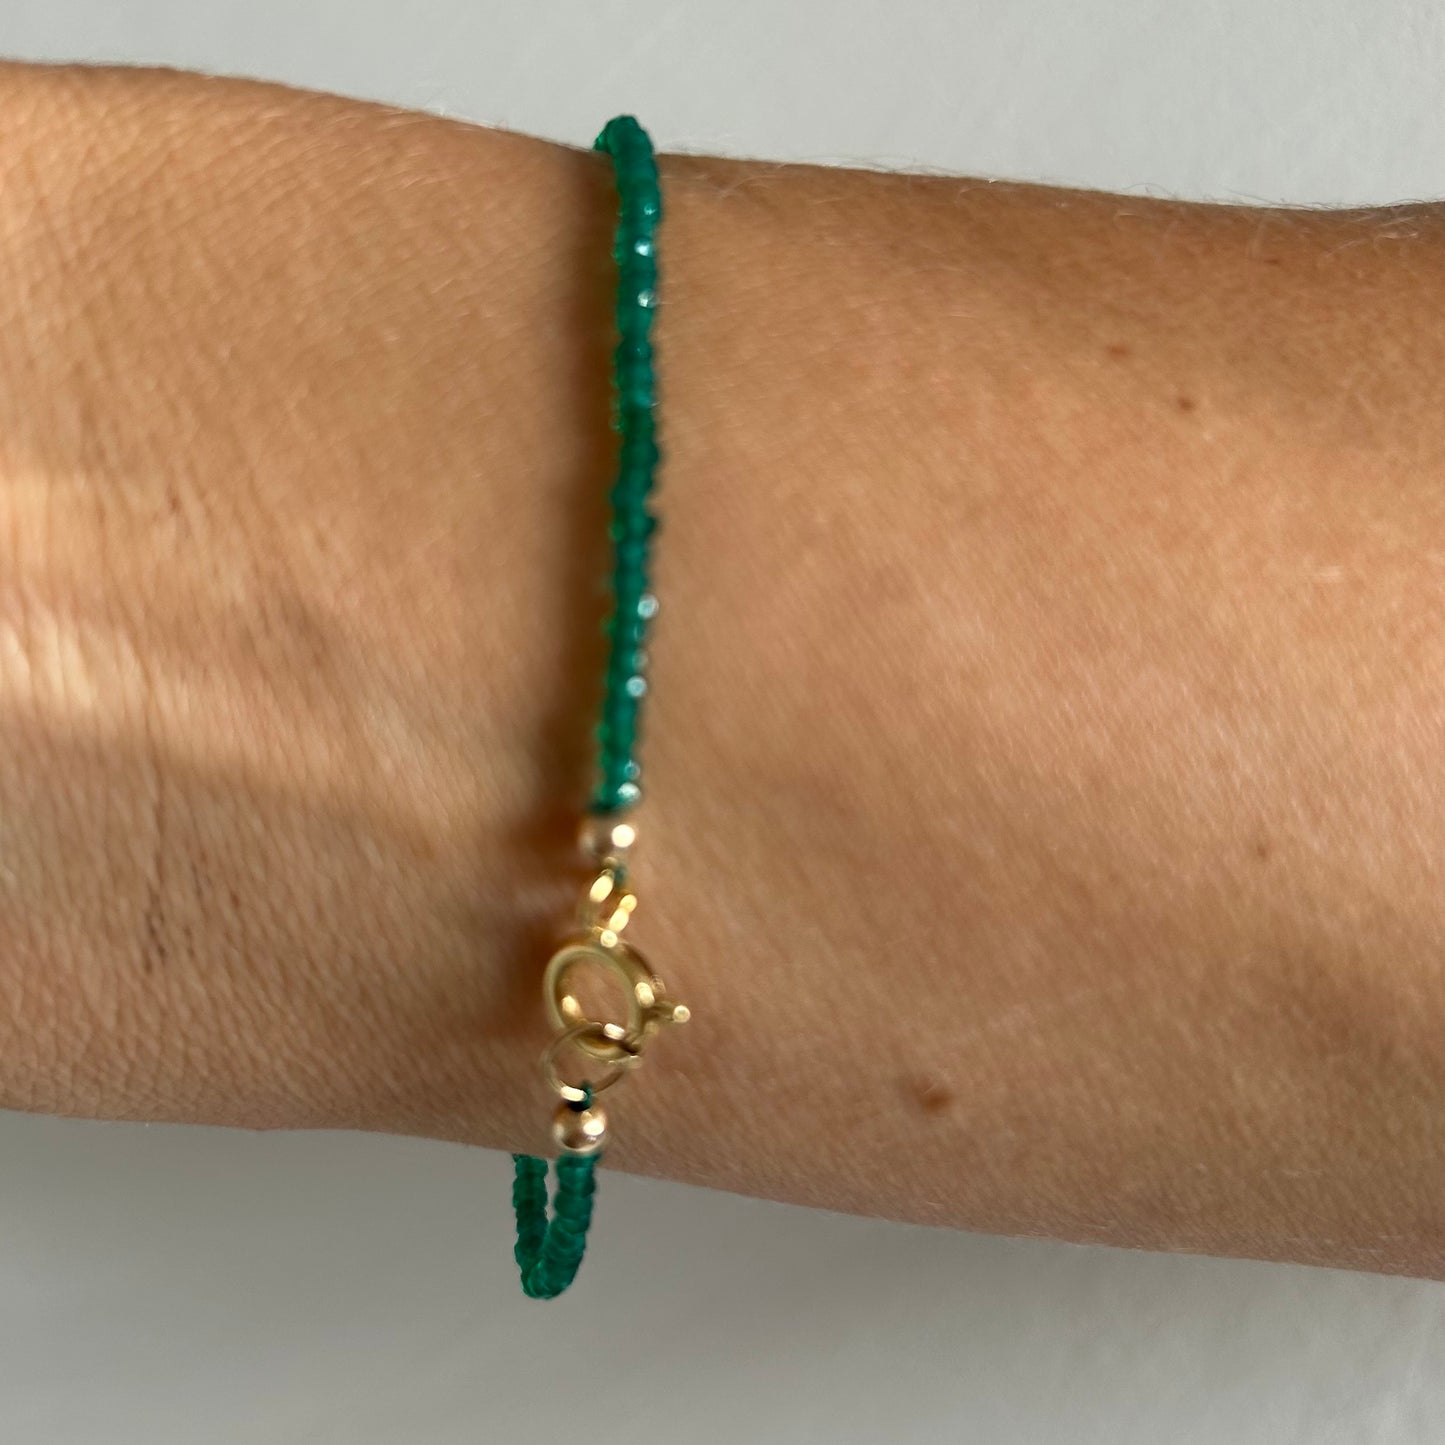 Fine green onyx bracelet with citrine gem